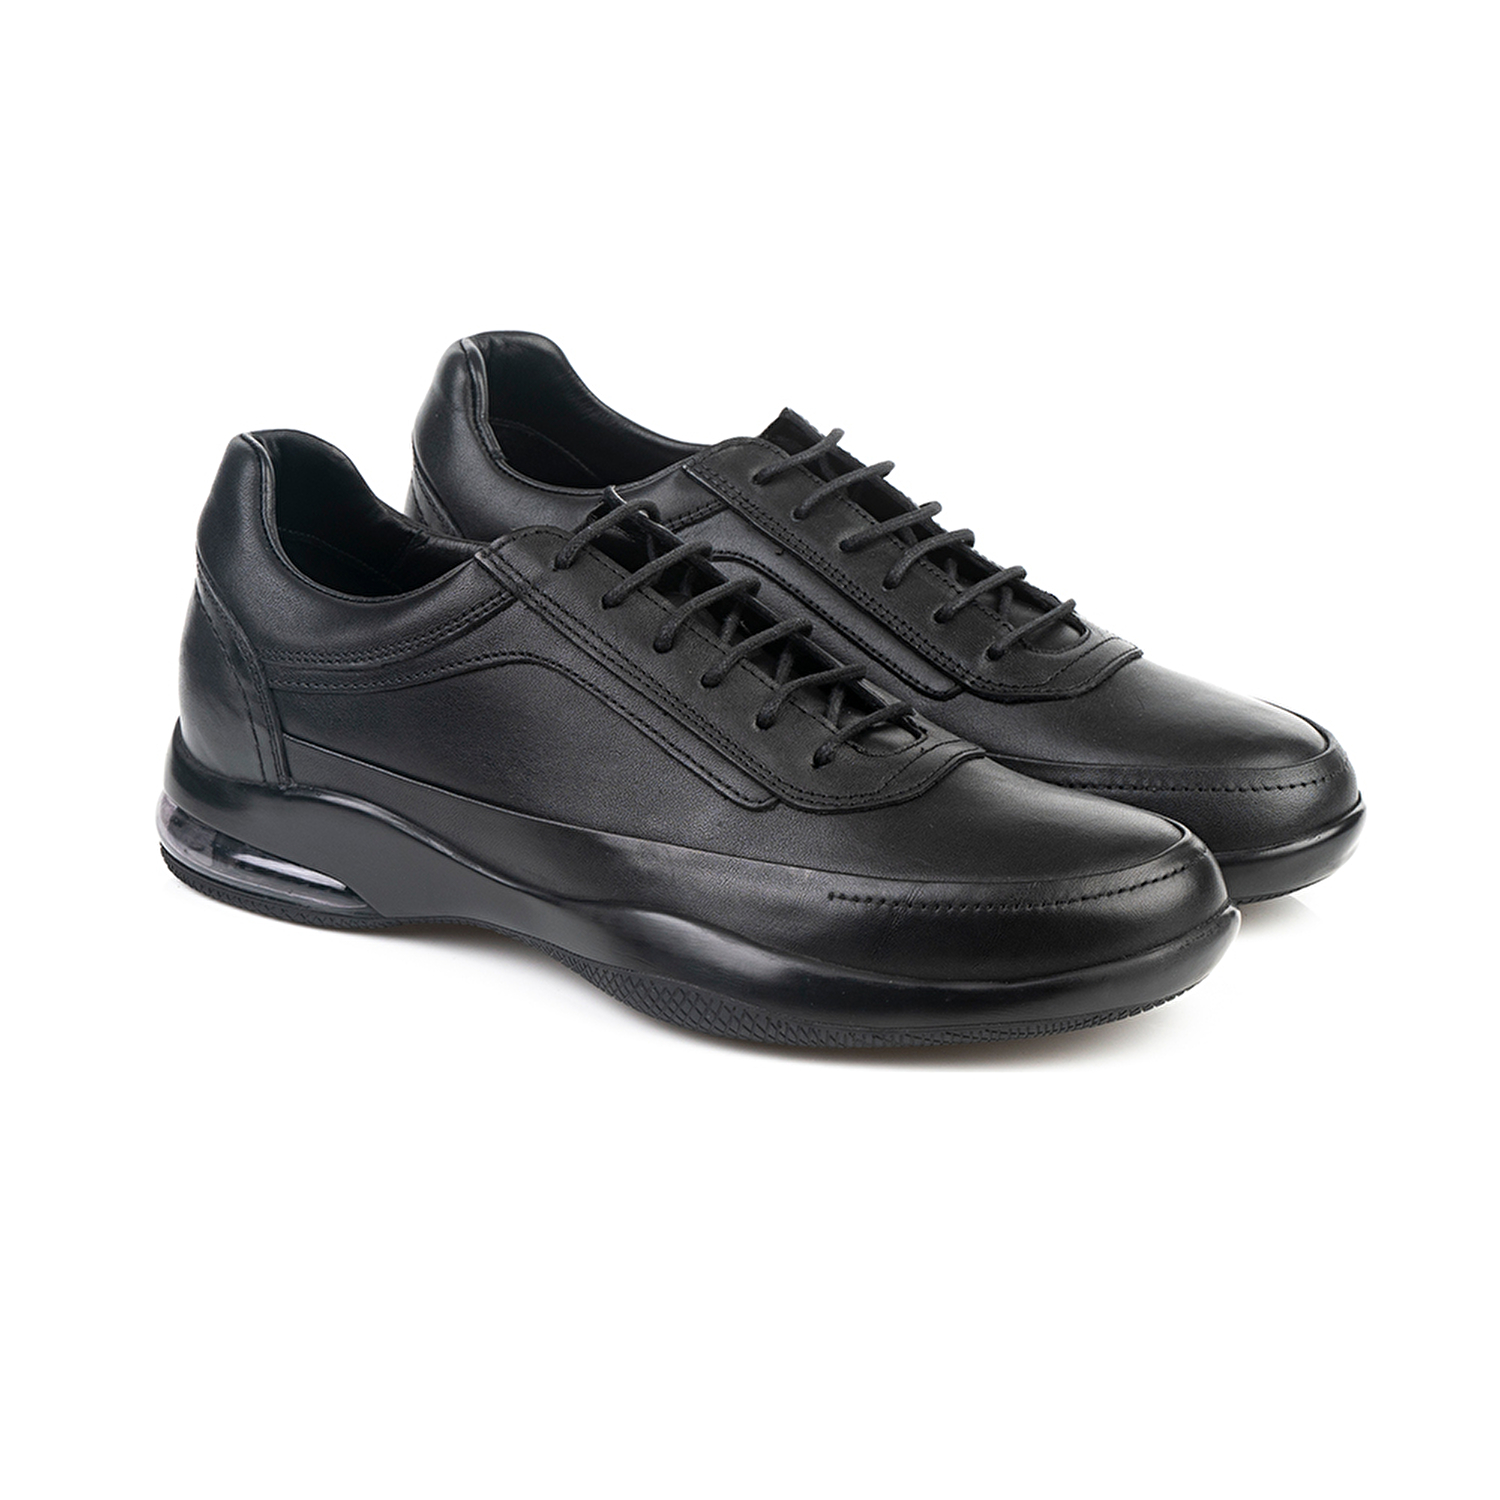 Erkek Ayakkabı Siyah 15121-2